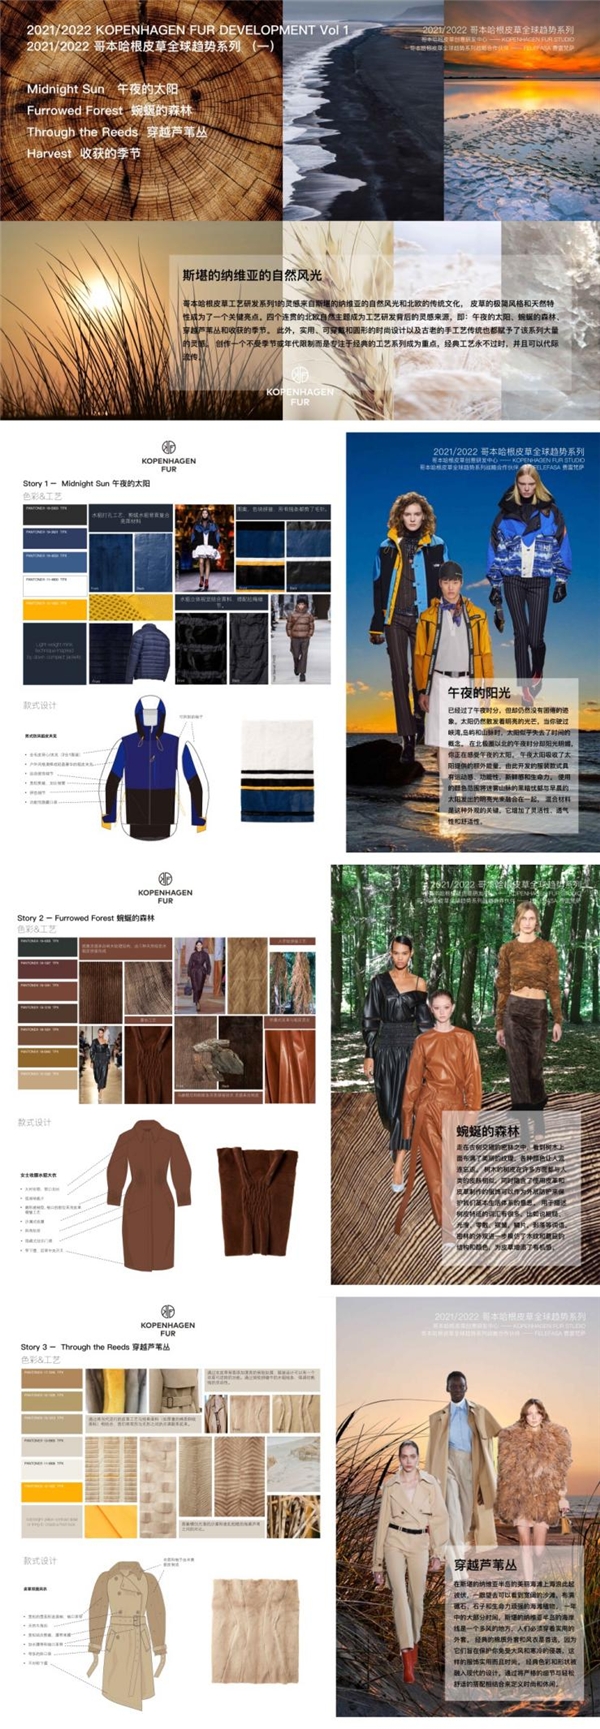 哥本哈根皮草x费雷梵萨2021时尚大秀圆满收官，引领全球皮草流行趋势